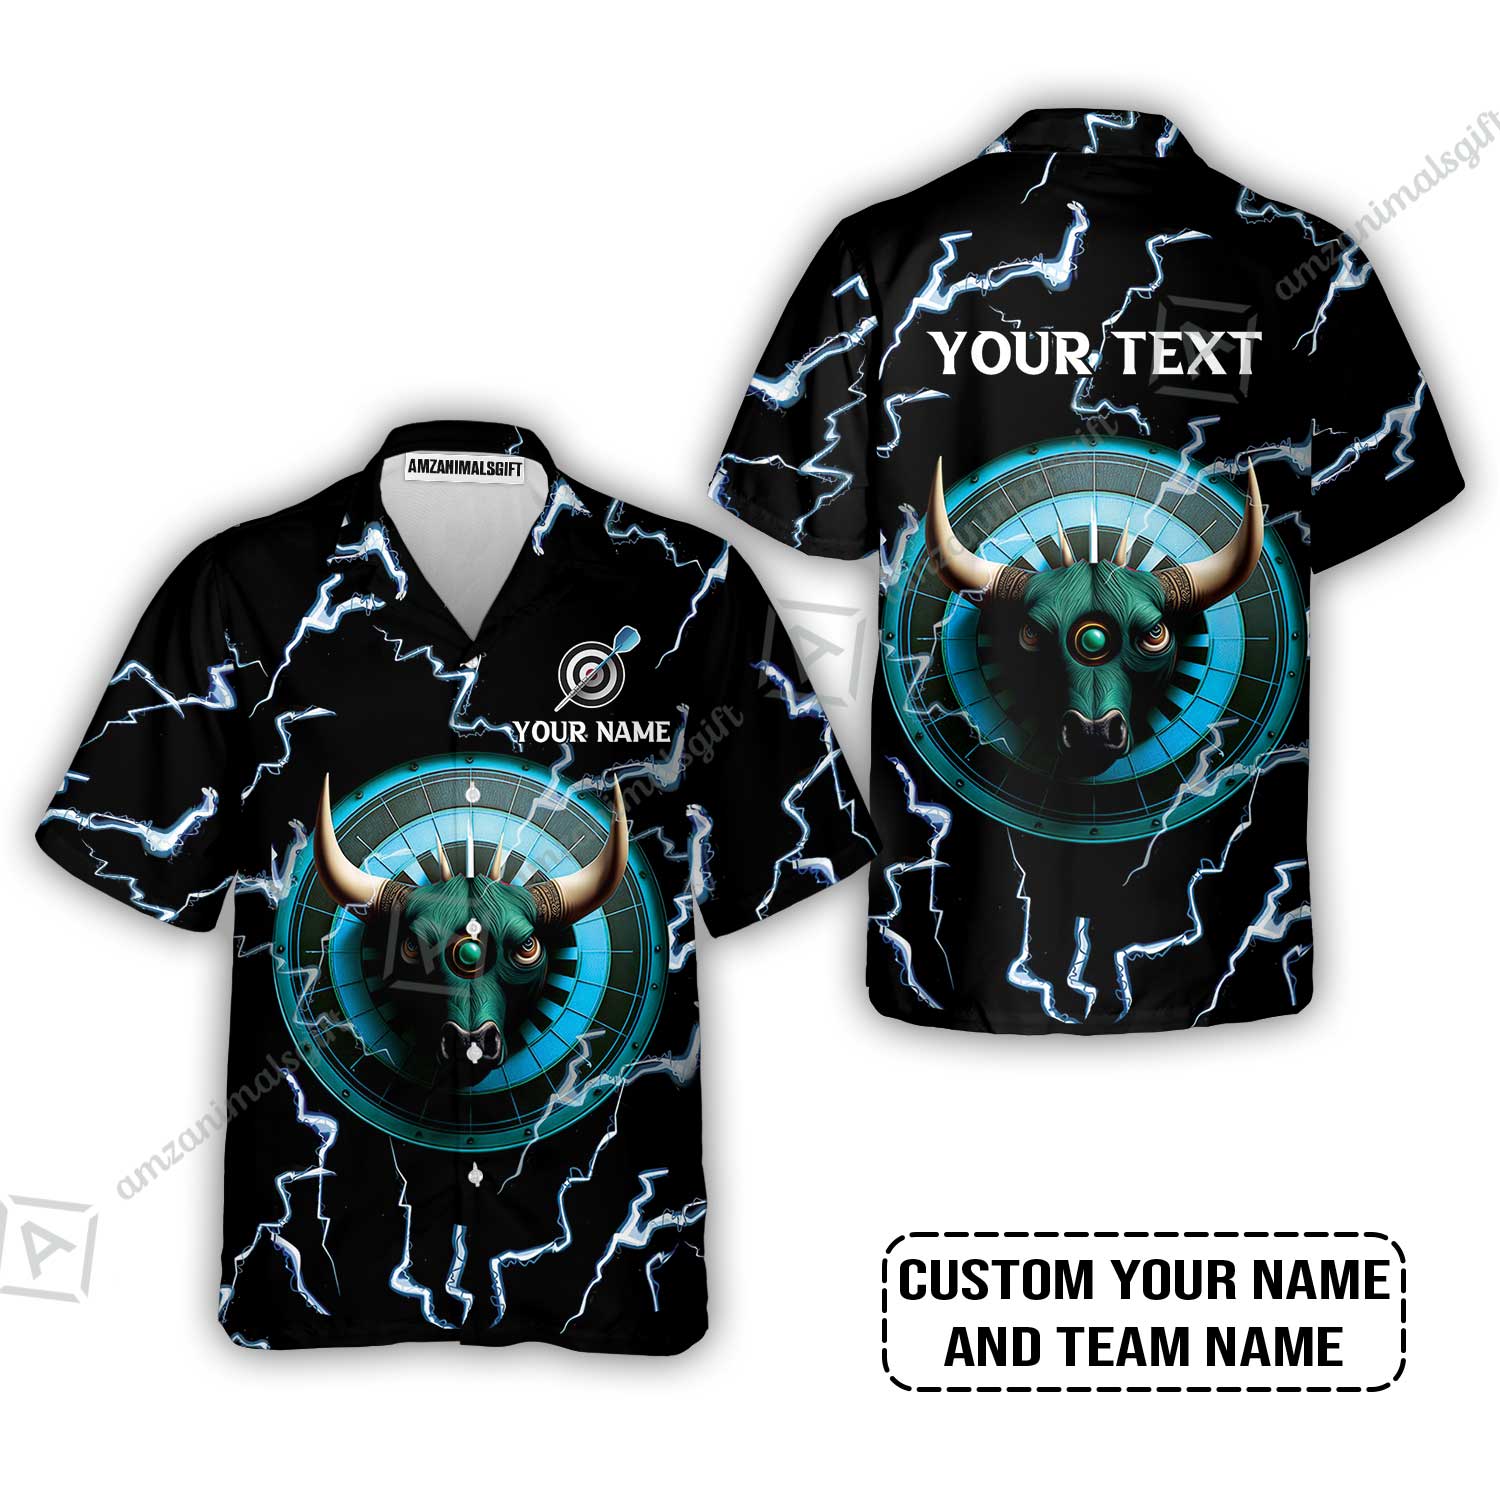 Customized Name & Text Darts Hawaiian Shirt, Personalized Name Bullseye Dartboard Hawaiian Shirt